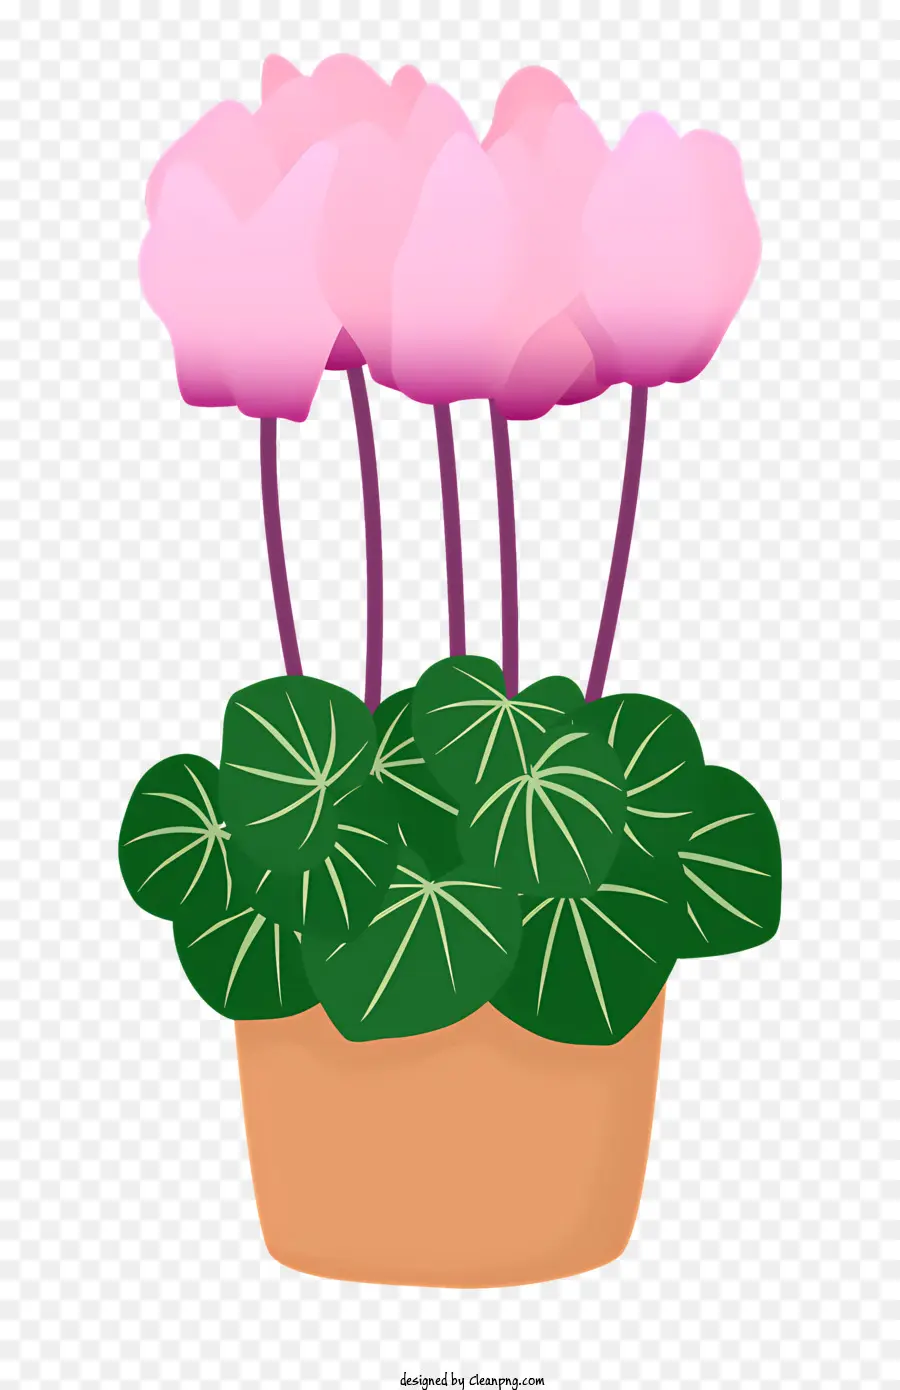 Blumenschmuck - Topfpflanze mit rosa Blumen im braunen Topf